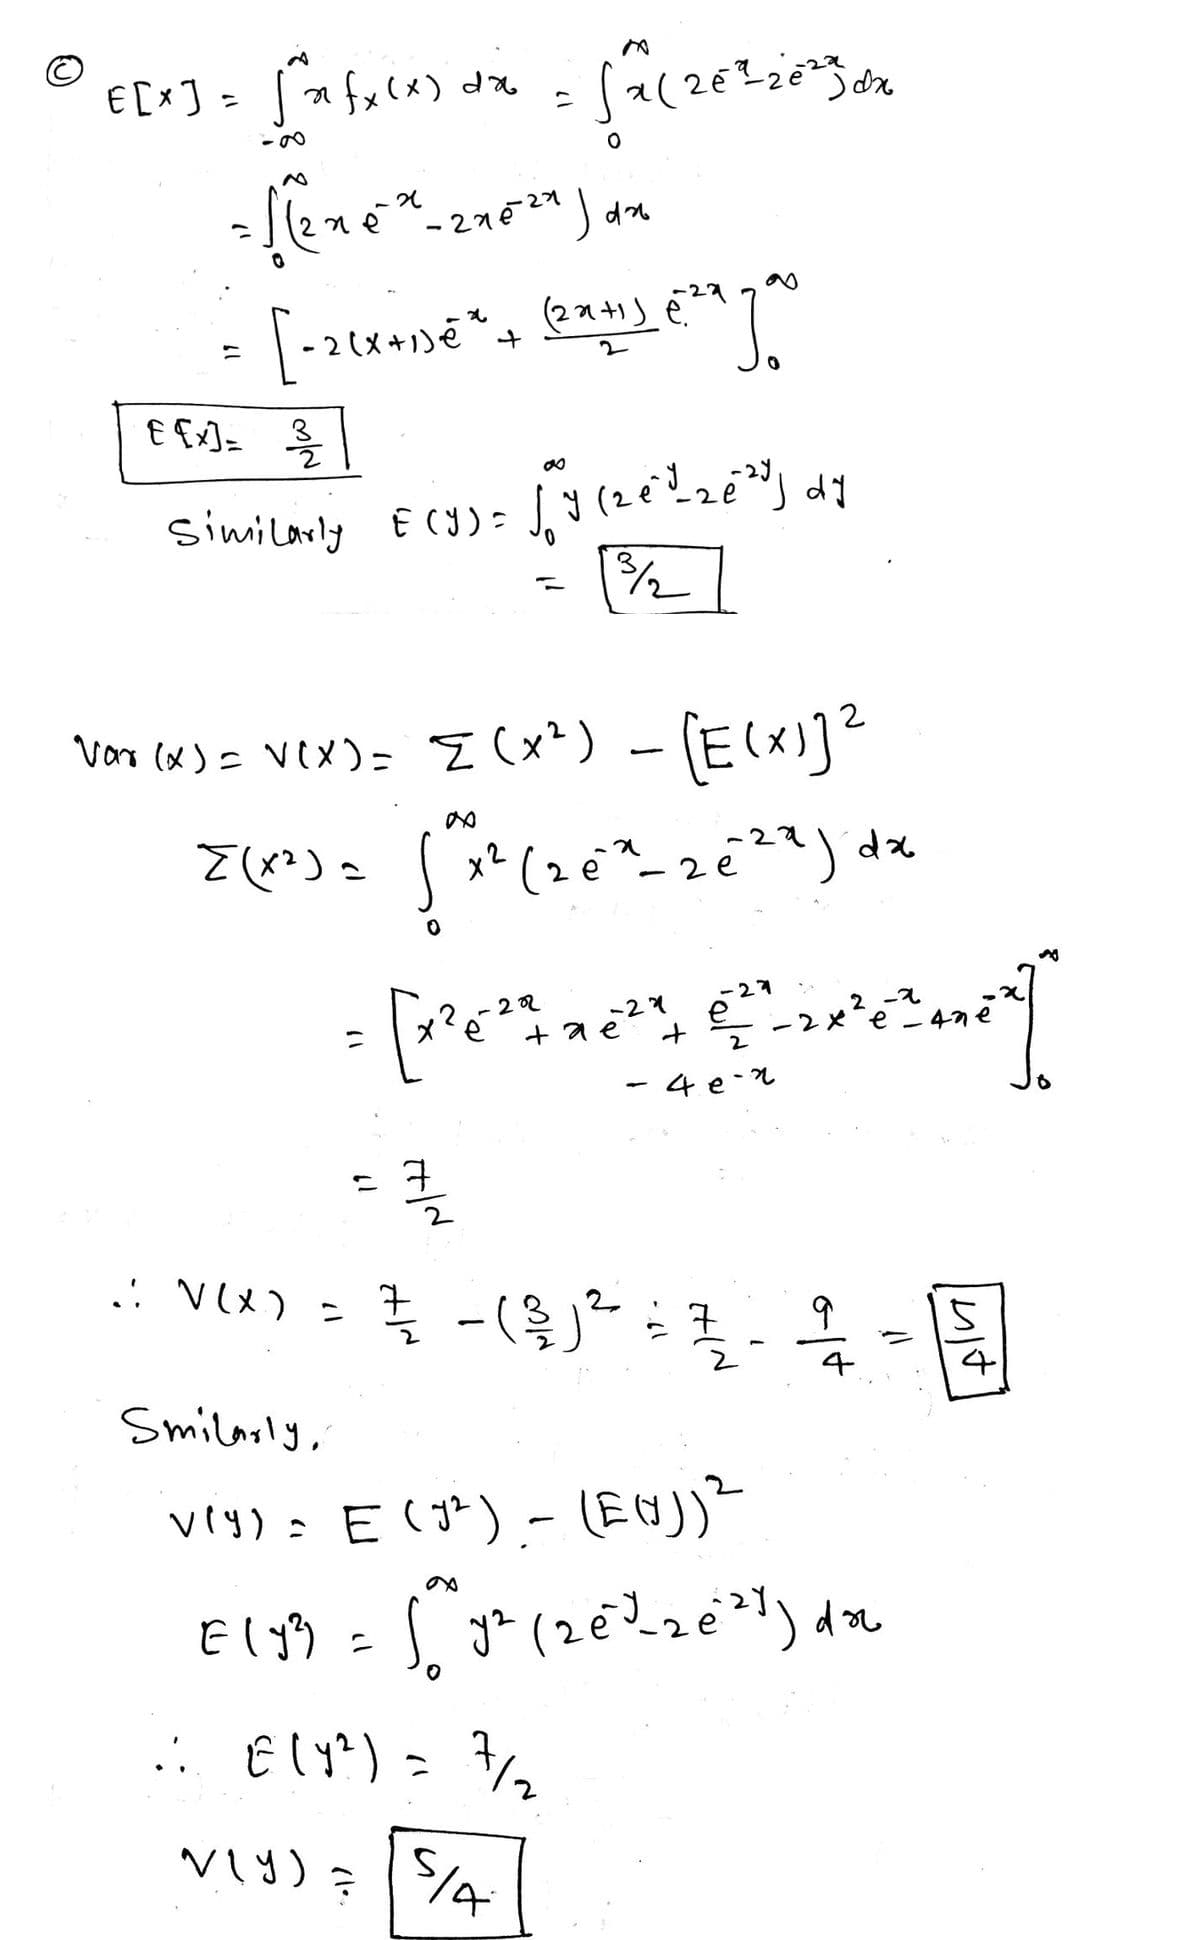 © E[x] = √n fx(x) dx √x (26²=-26²33 dx
C
20
= [(n=²* - 210²9 ) an
27524
[-2(x+1)=²*² + (2x+1)
€ [x] = 3/1/2
Similarly E(Y) =
Vor (x) = √(x) = {(x²) - [E(X)]²
V(X)
.: V(X) =
[(x²) = (x² (2 ex-zeza jdx
х2
2e
61
(22+1) €29
e²a Jo
7/22
-27
2
= [resses gren]]
[x²
е
тае
42
बात
√y (20²2 ₂0²³] dy
ง
¾/1/2
SIA
+
е
7/21 - ( ²/2 ) ² = 7
클
2
4e-2
oft
4
Smilarly,
vry) = E(7²) - (EN))²
E (y² = √² y² (2€²³²_₂e²²4) do
.: € (Y²) = 7/₂2
...
N(Y) =
17
Imit
3
4